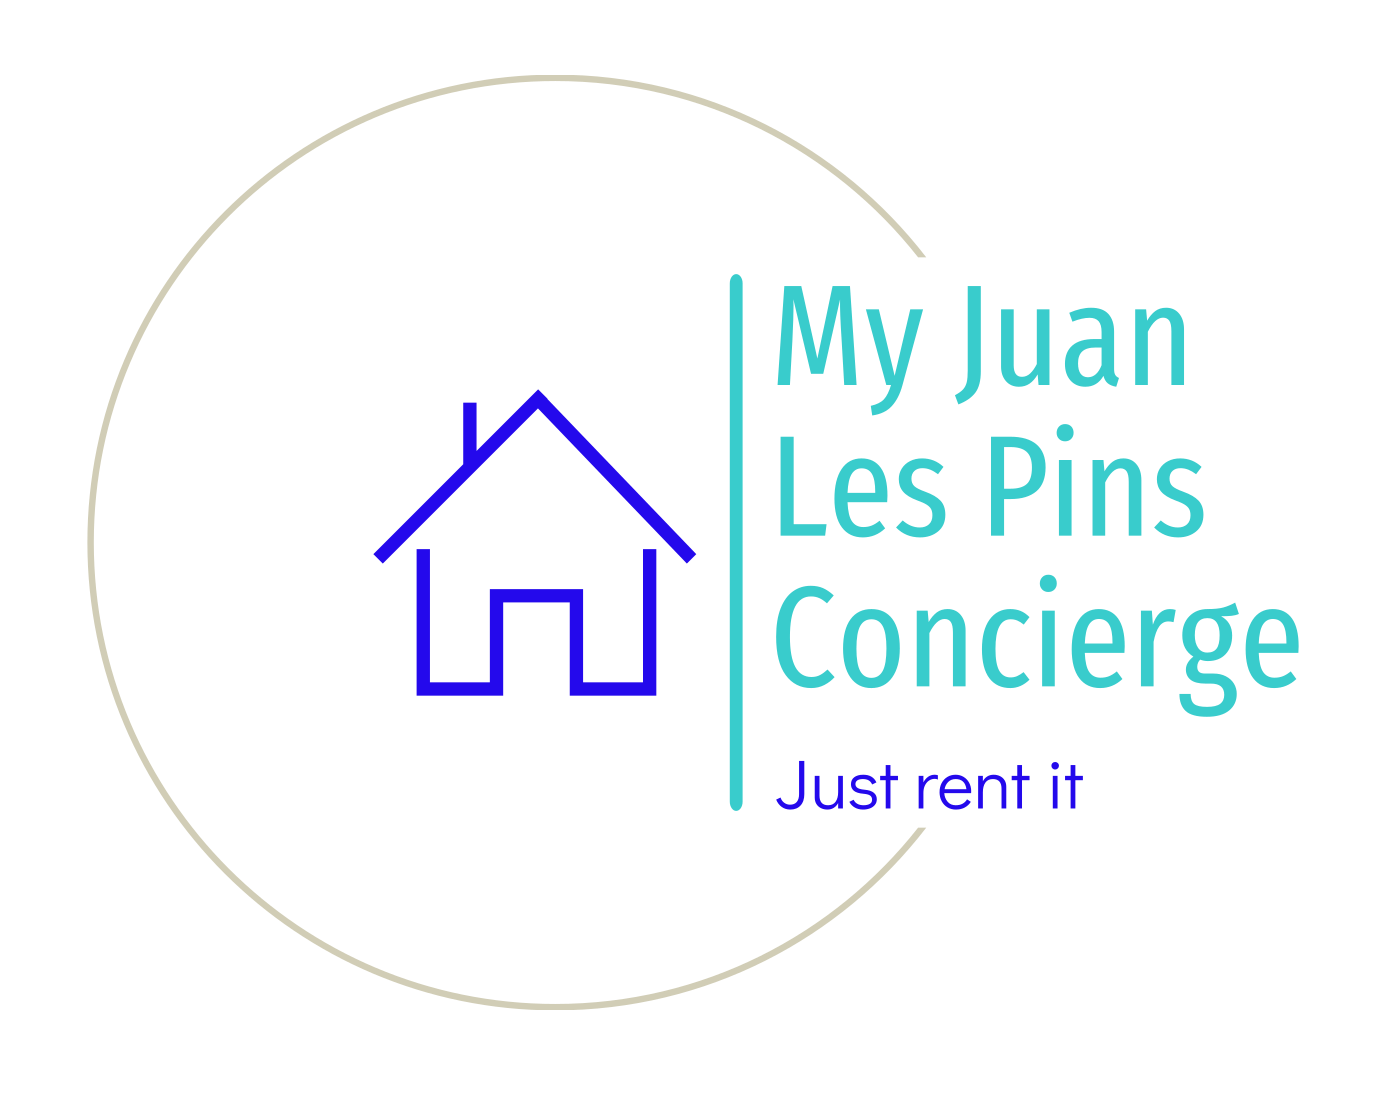 My Juan les Pins Concierge